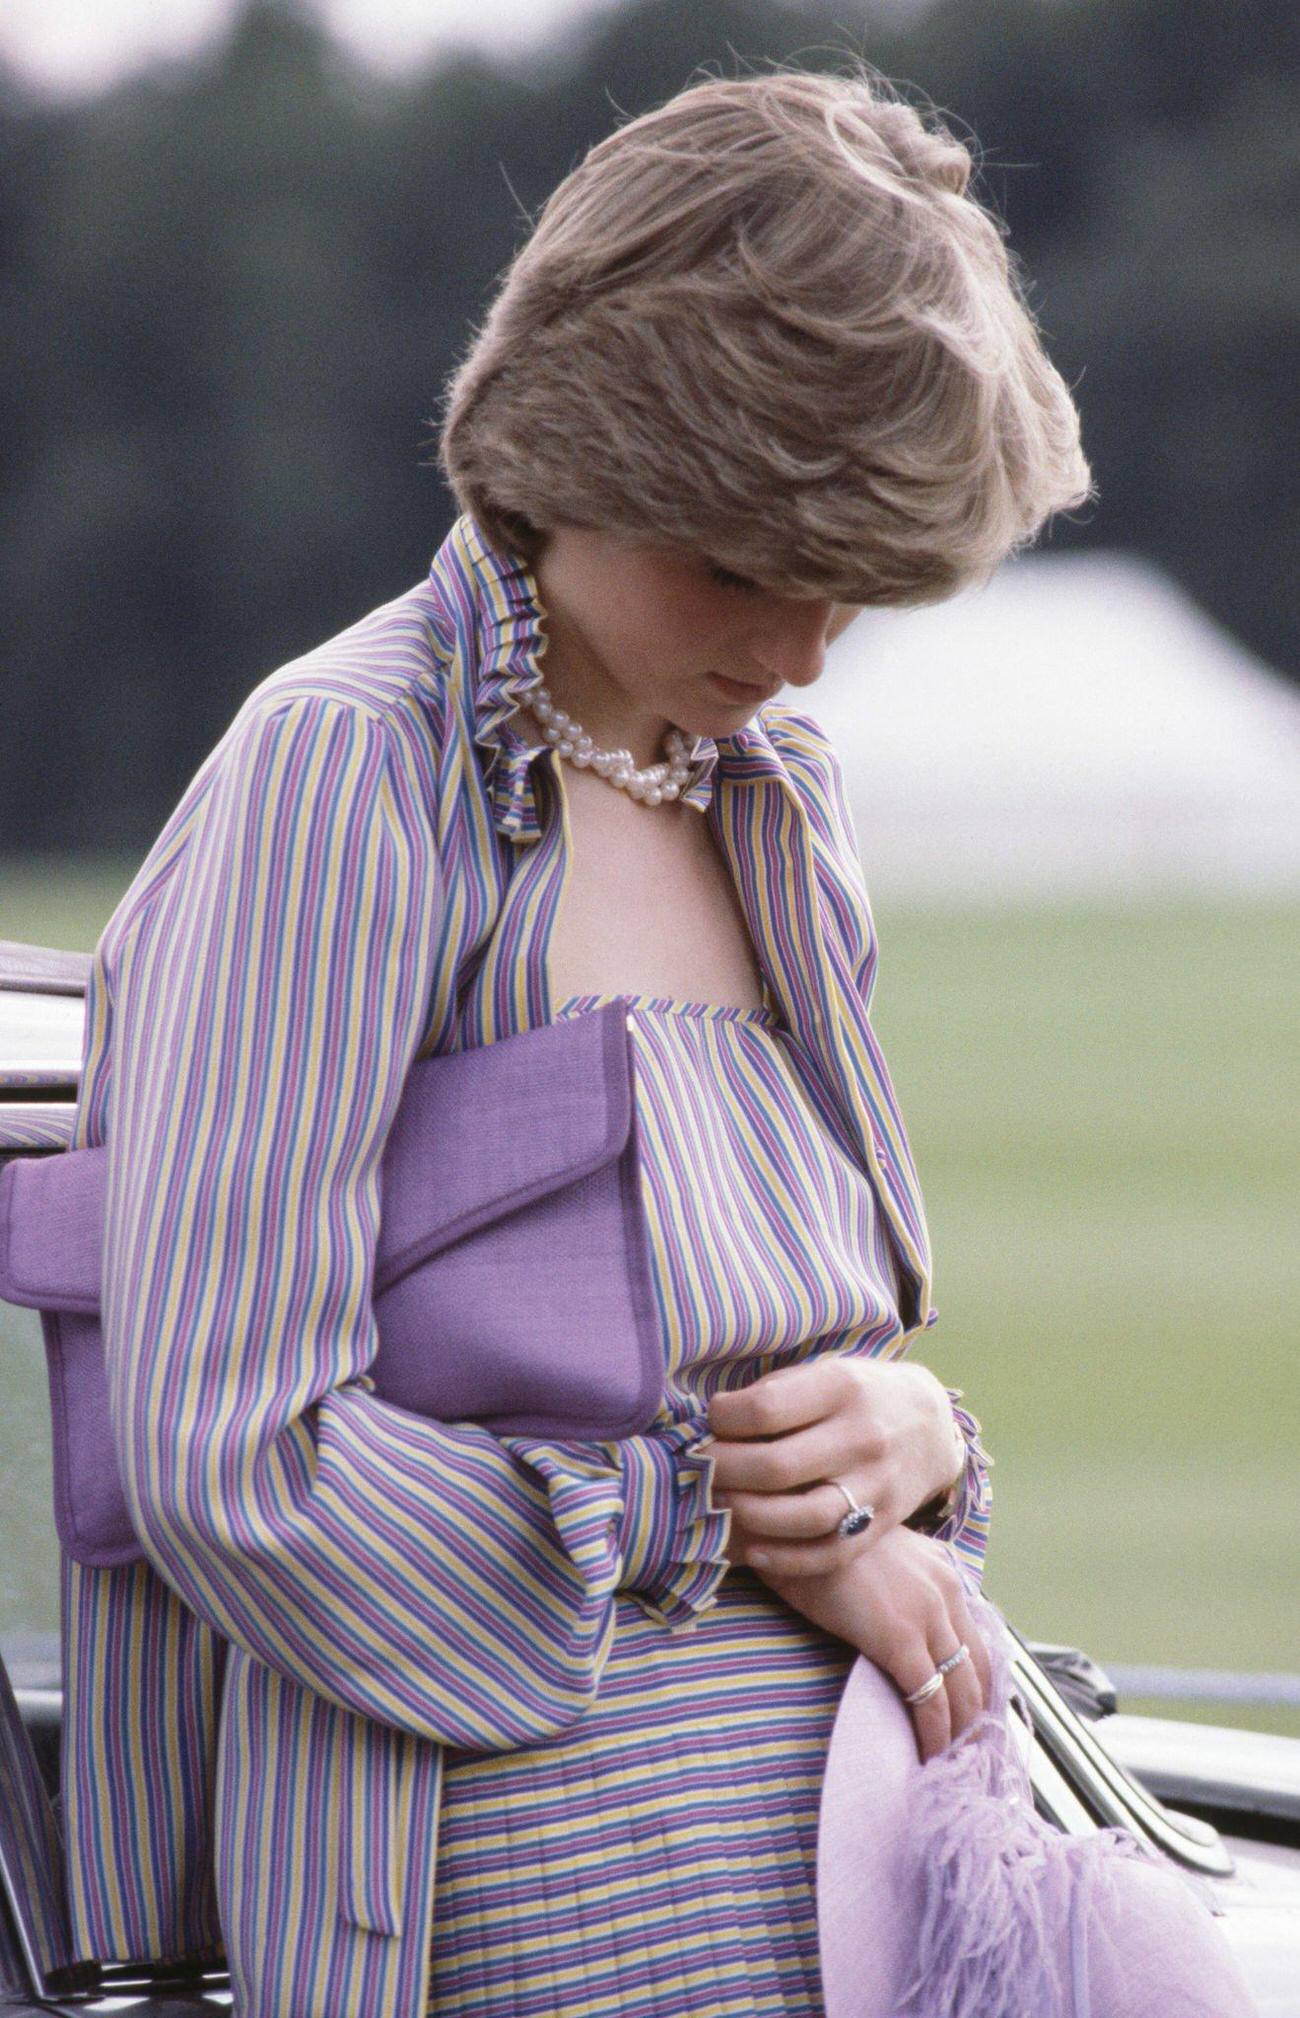 Princess Diana as she looks down.